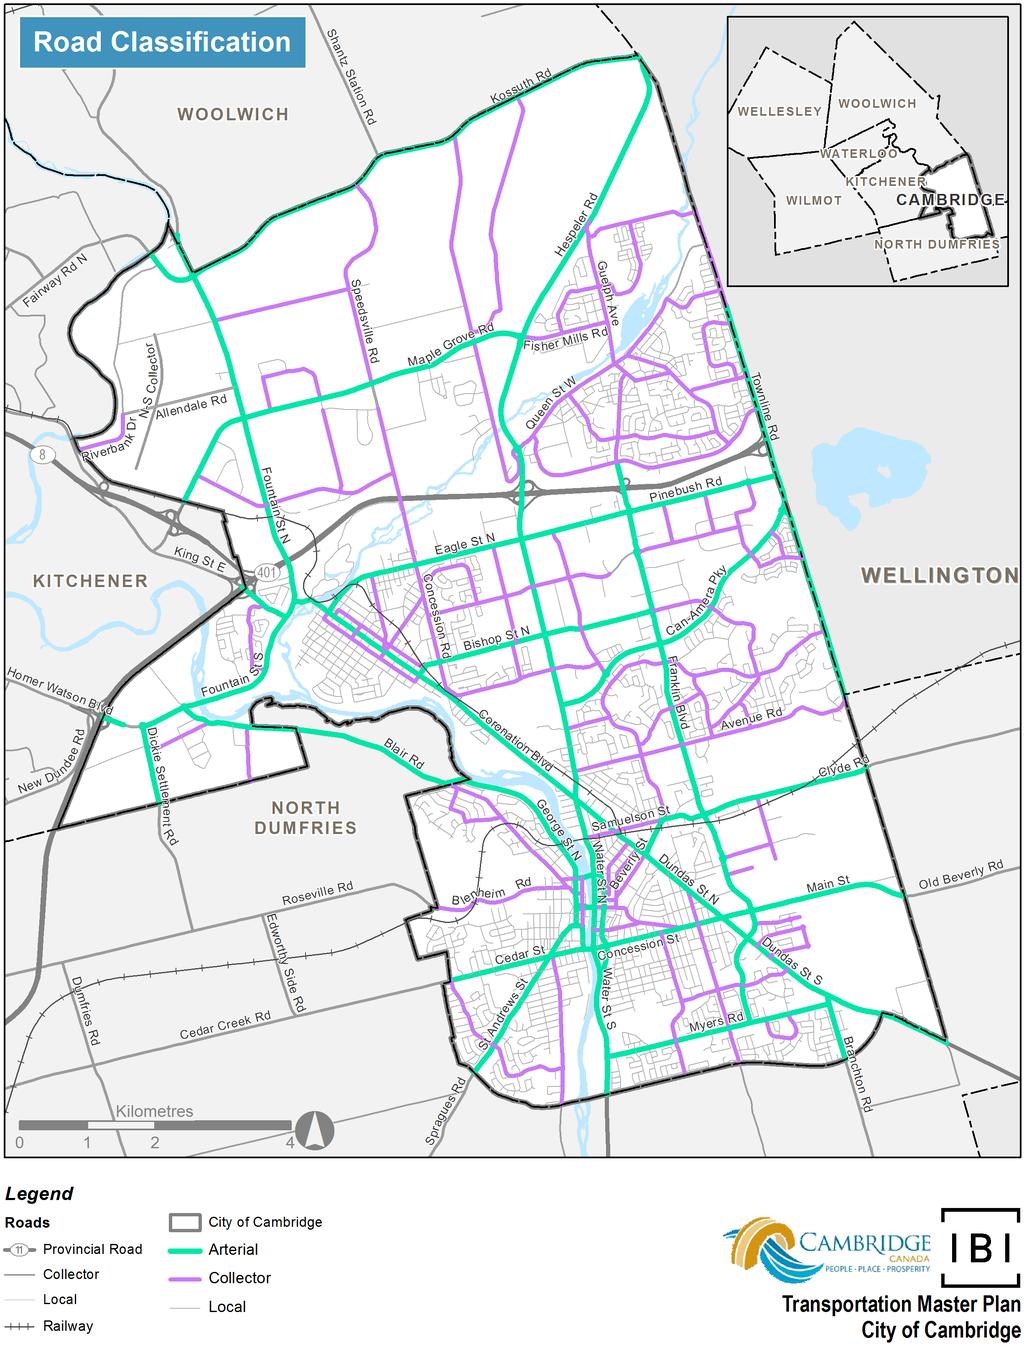 Current City Road Classifications*